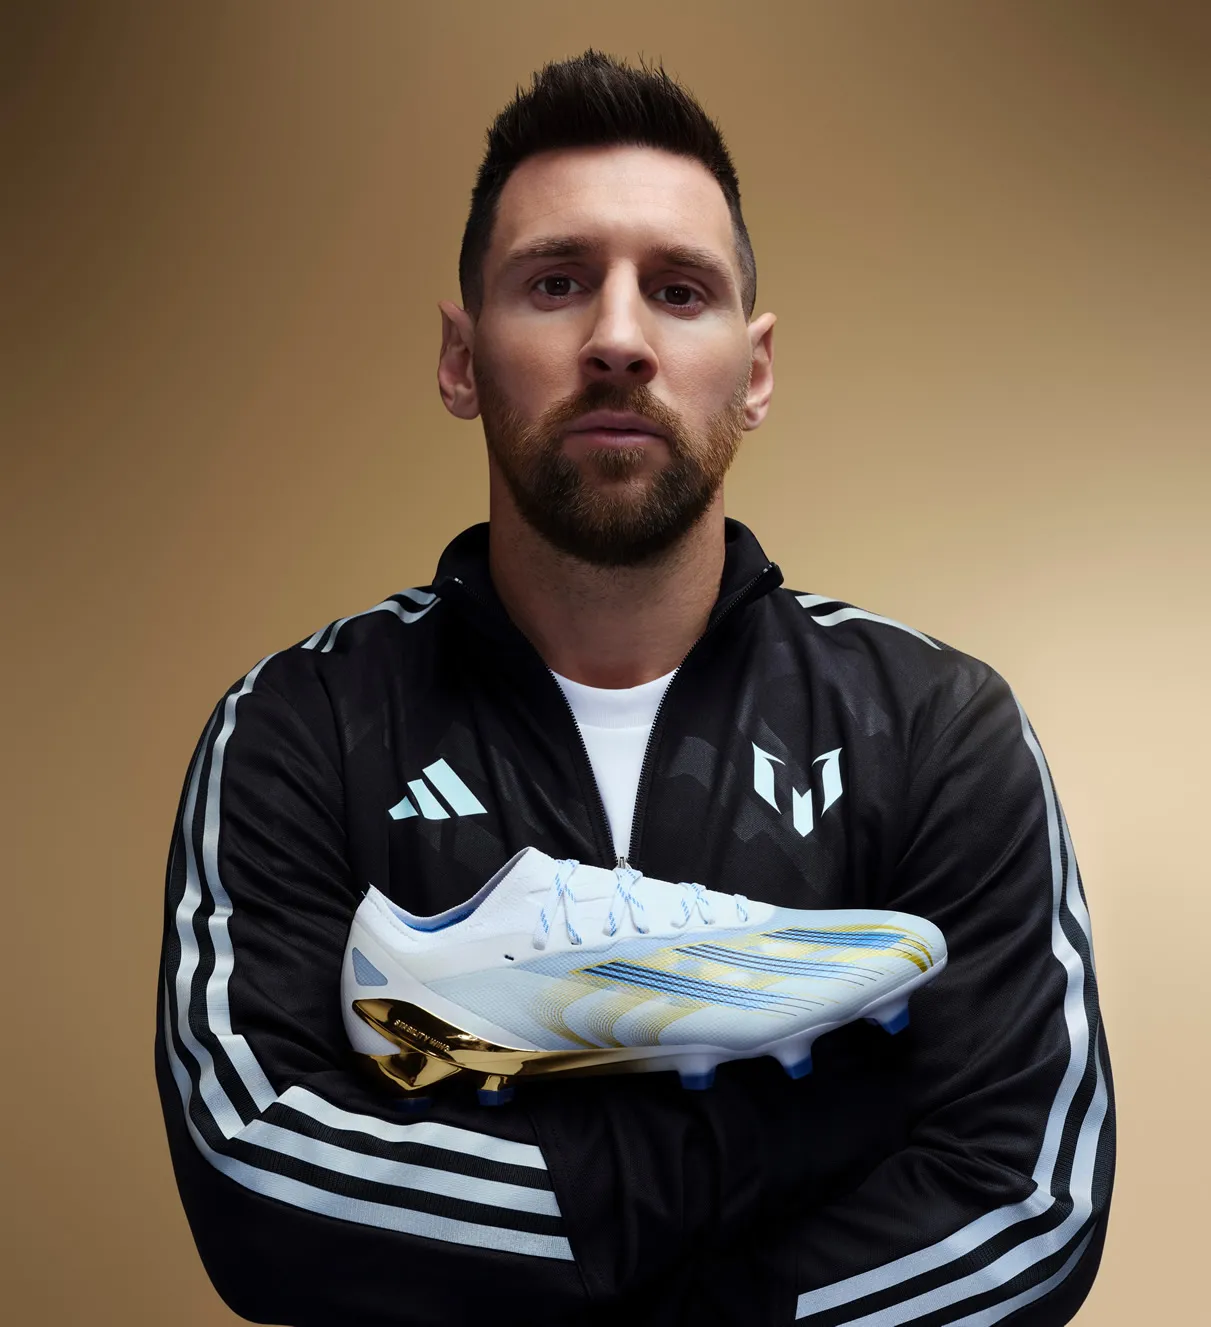 Botines adidas de Lionel Messi "Las estrellas" 2023